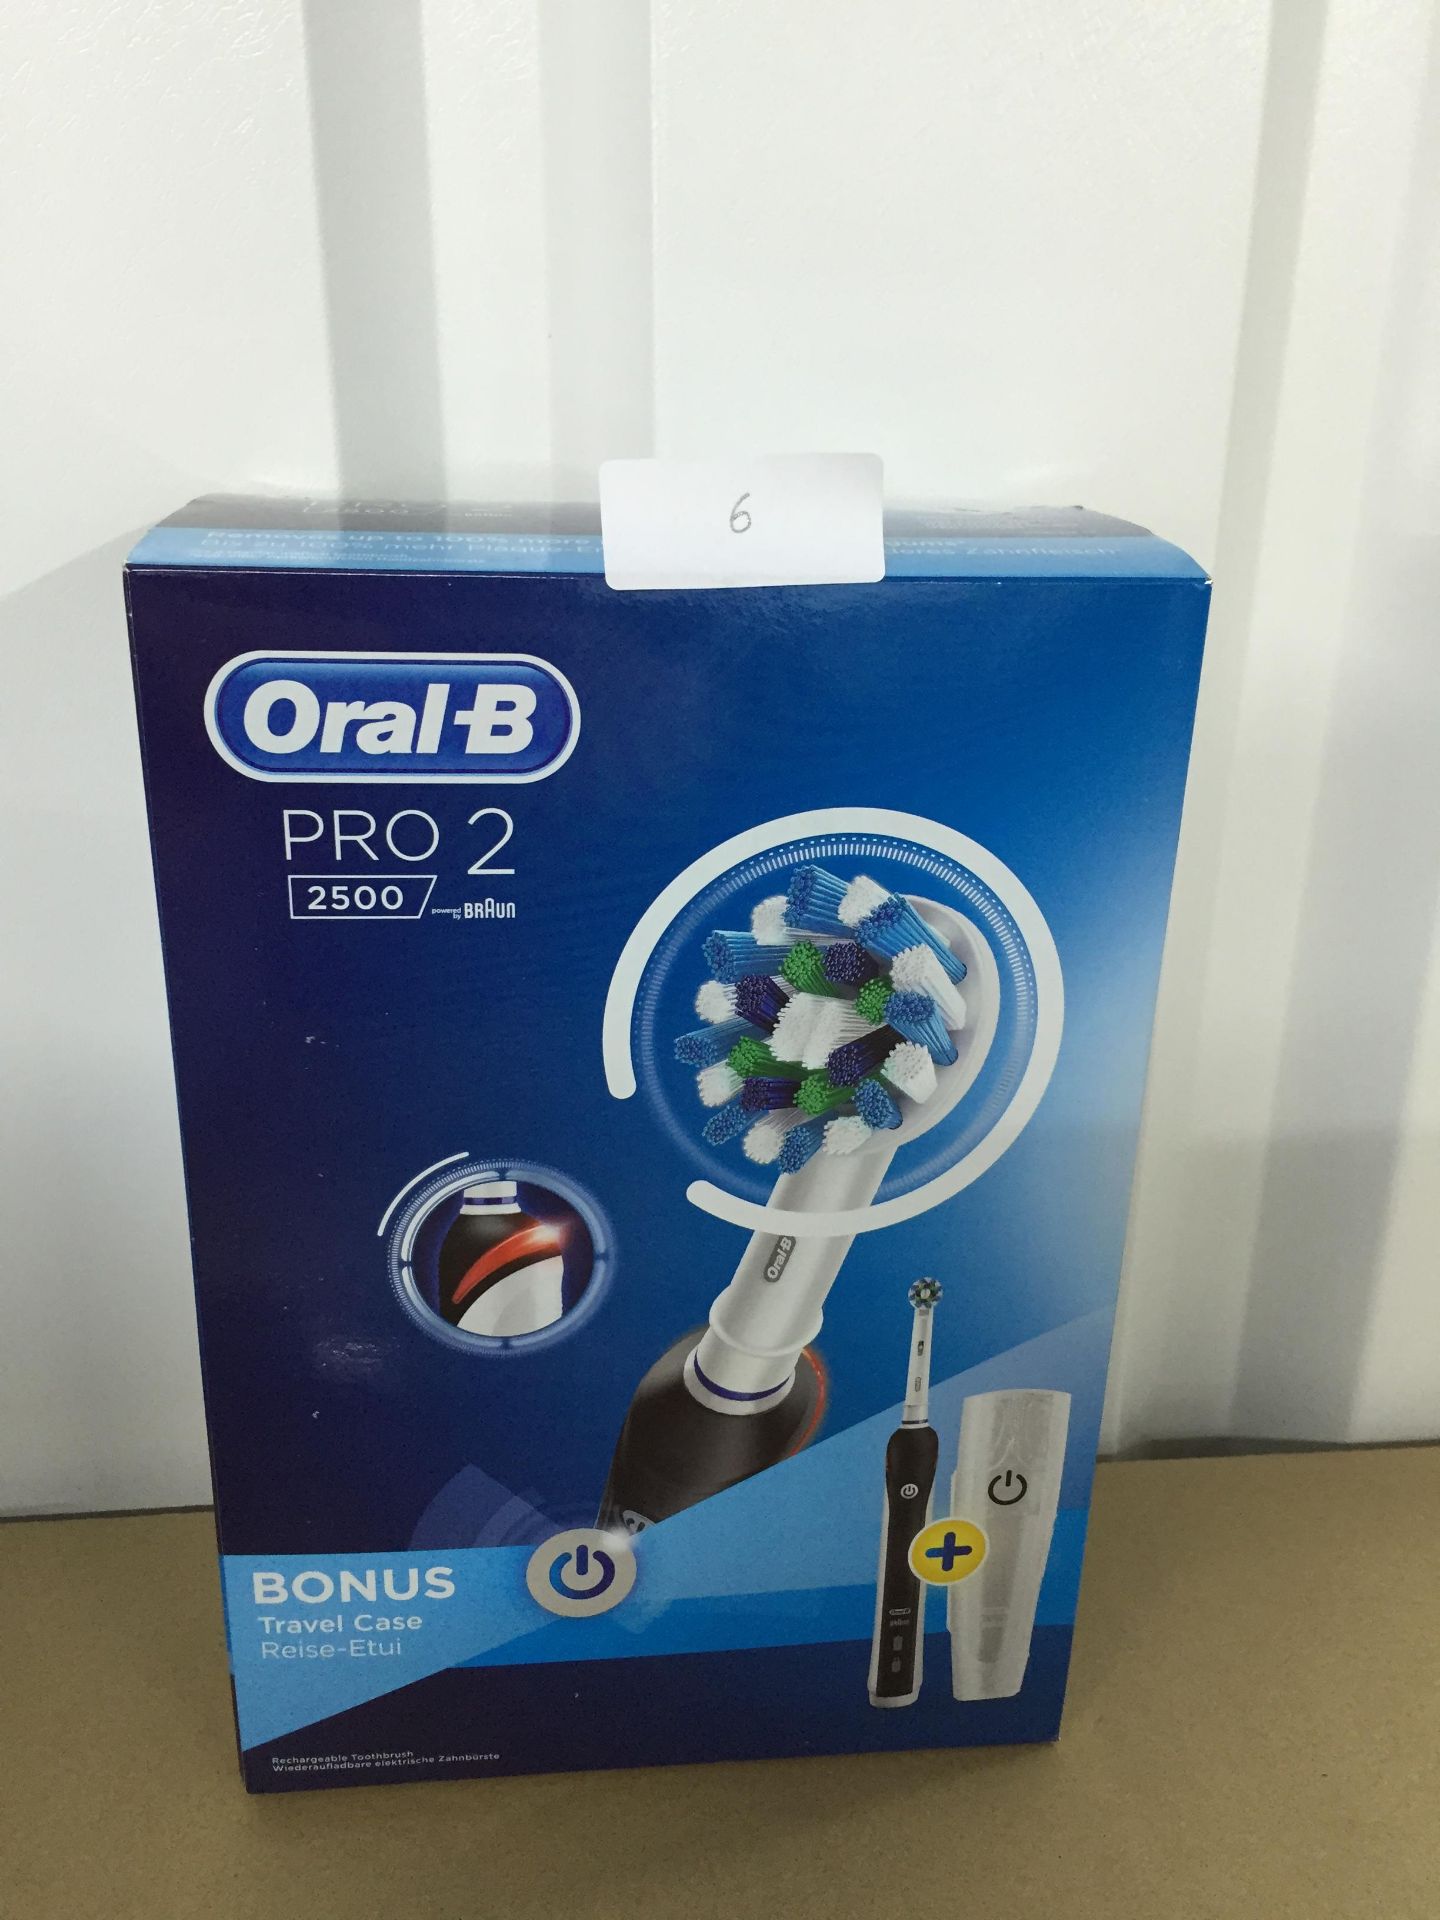 Oral -B Pro 2 2500 electric toothbrush + bonus travel case